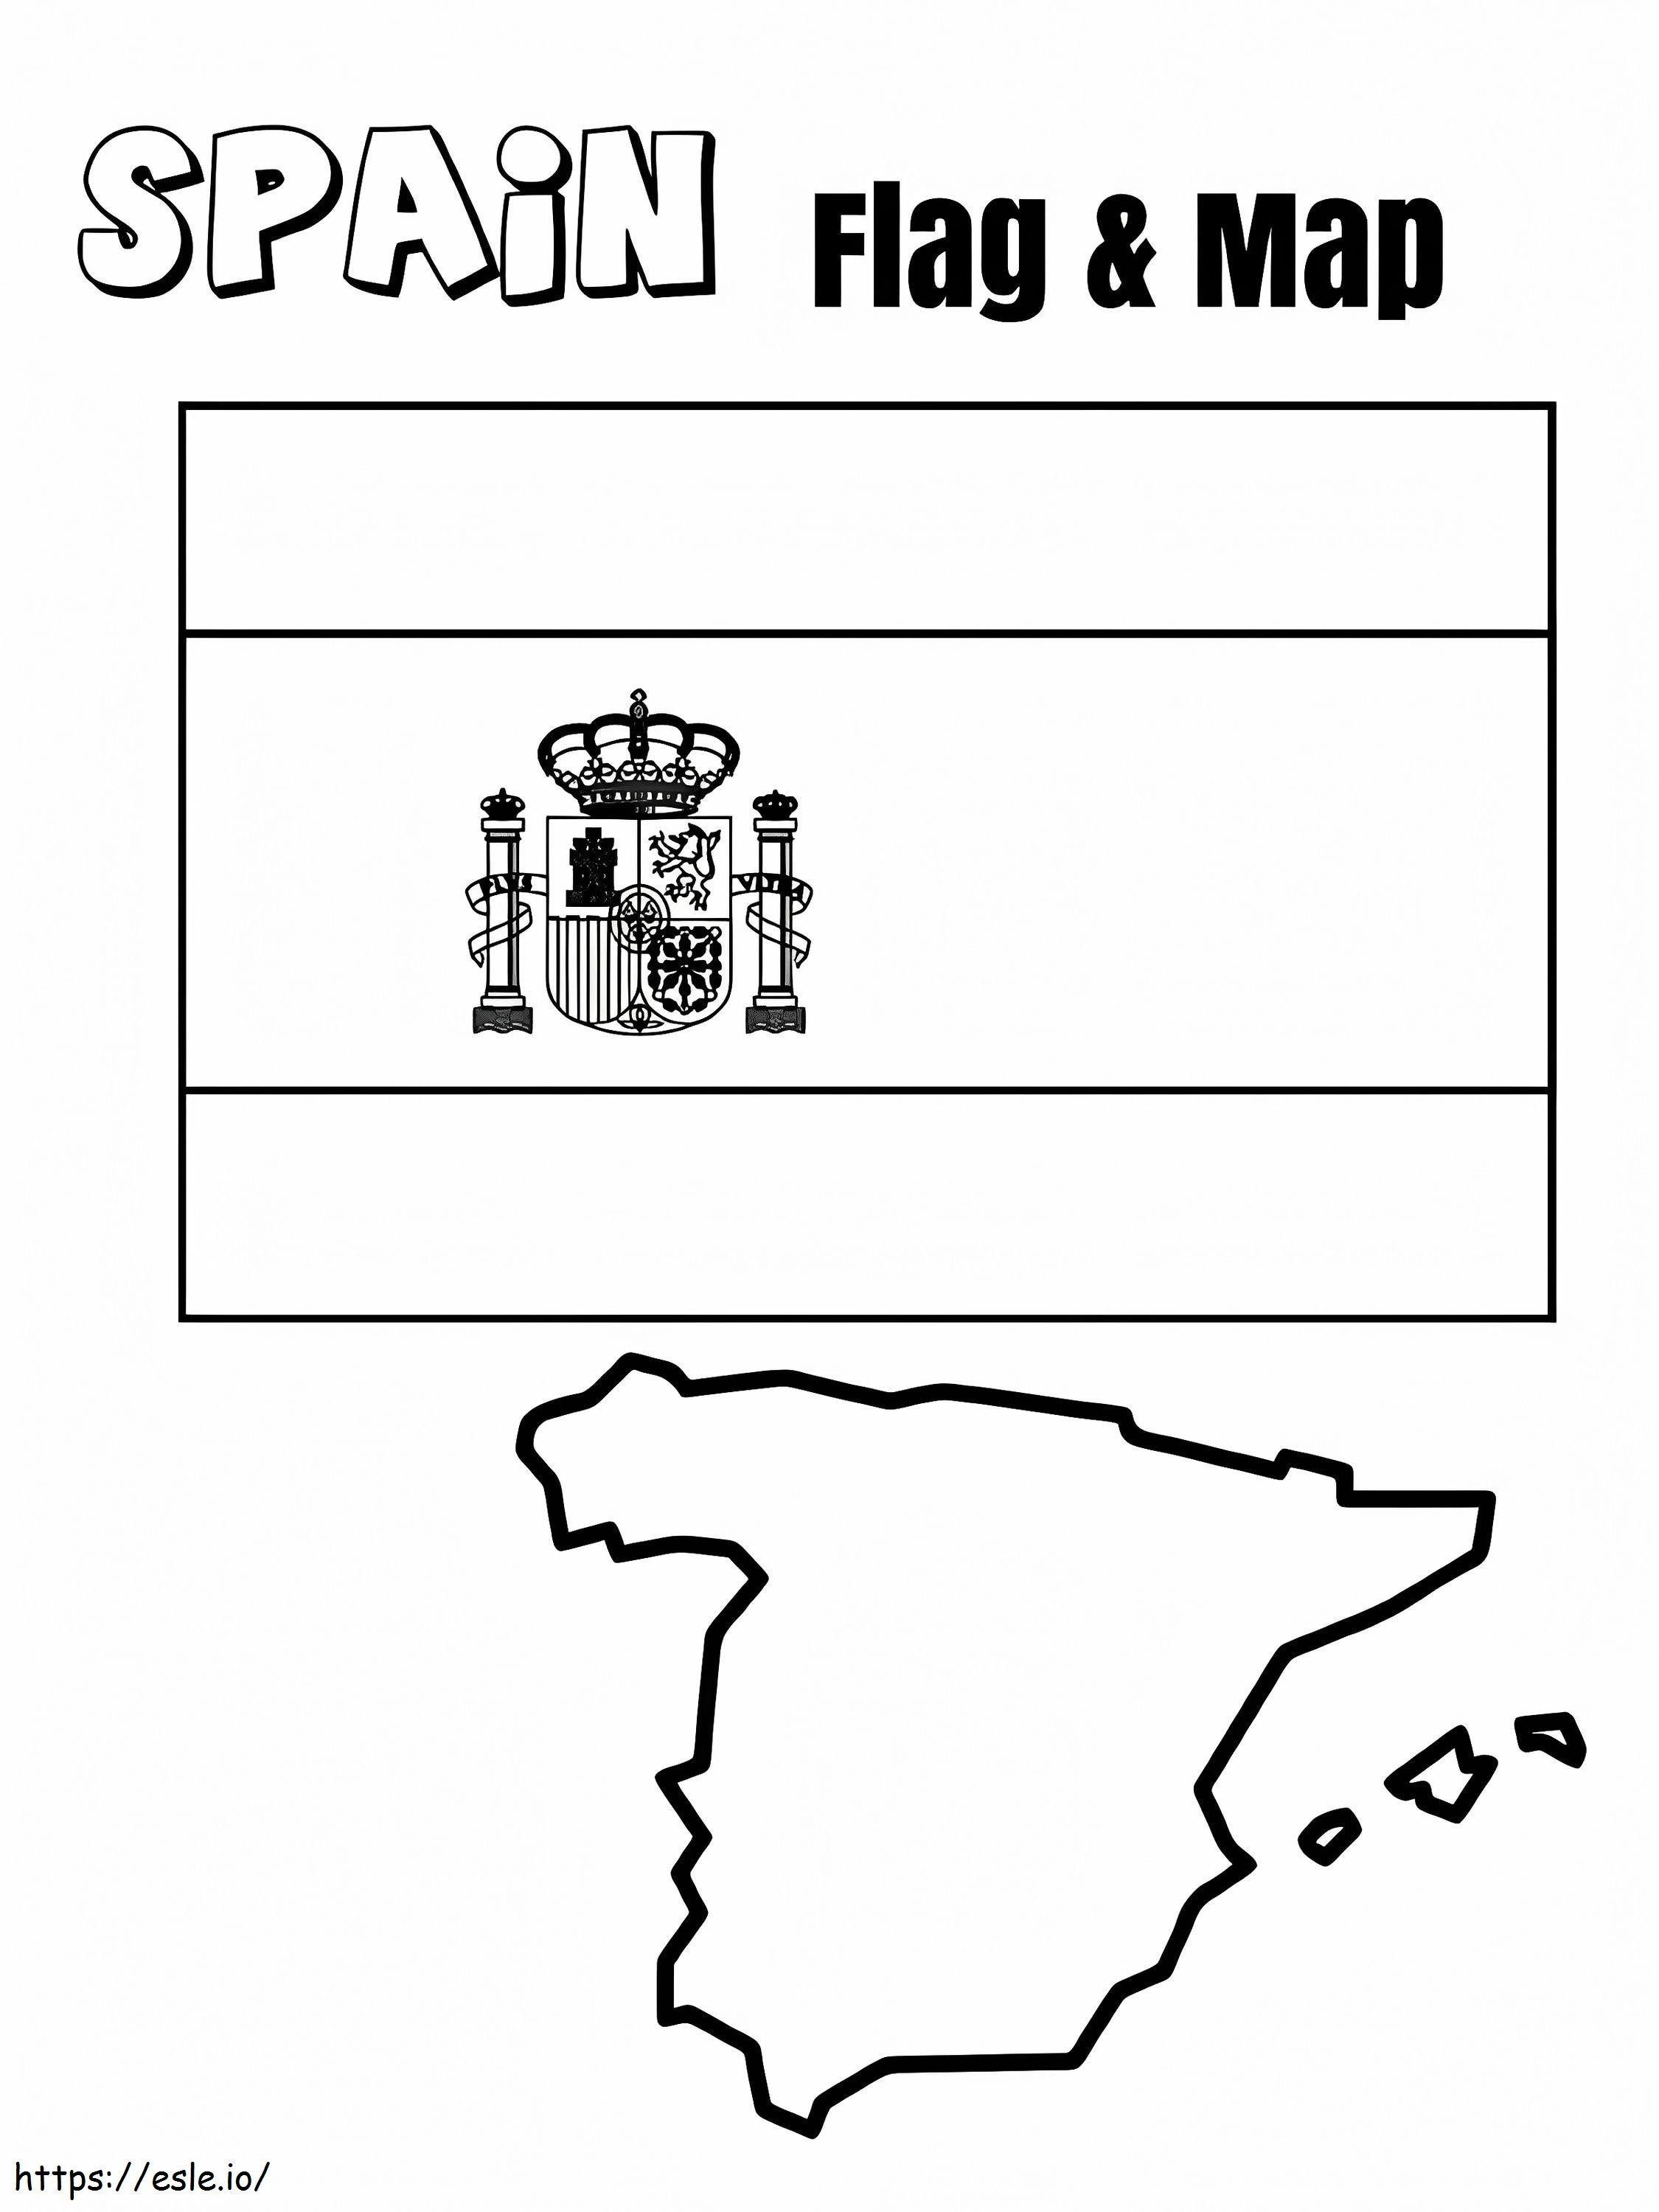 Coloriage Drapeau et carte de l'Espagne à imprimer dessin